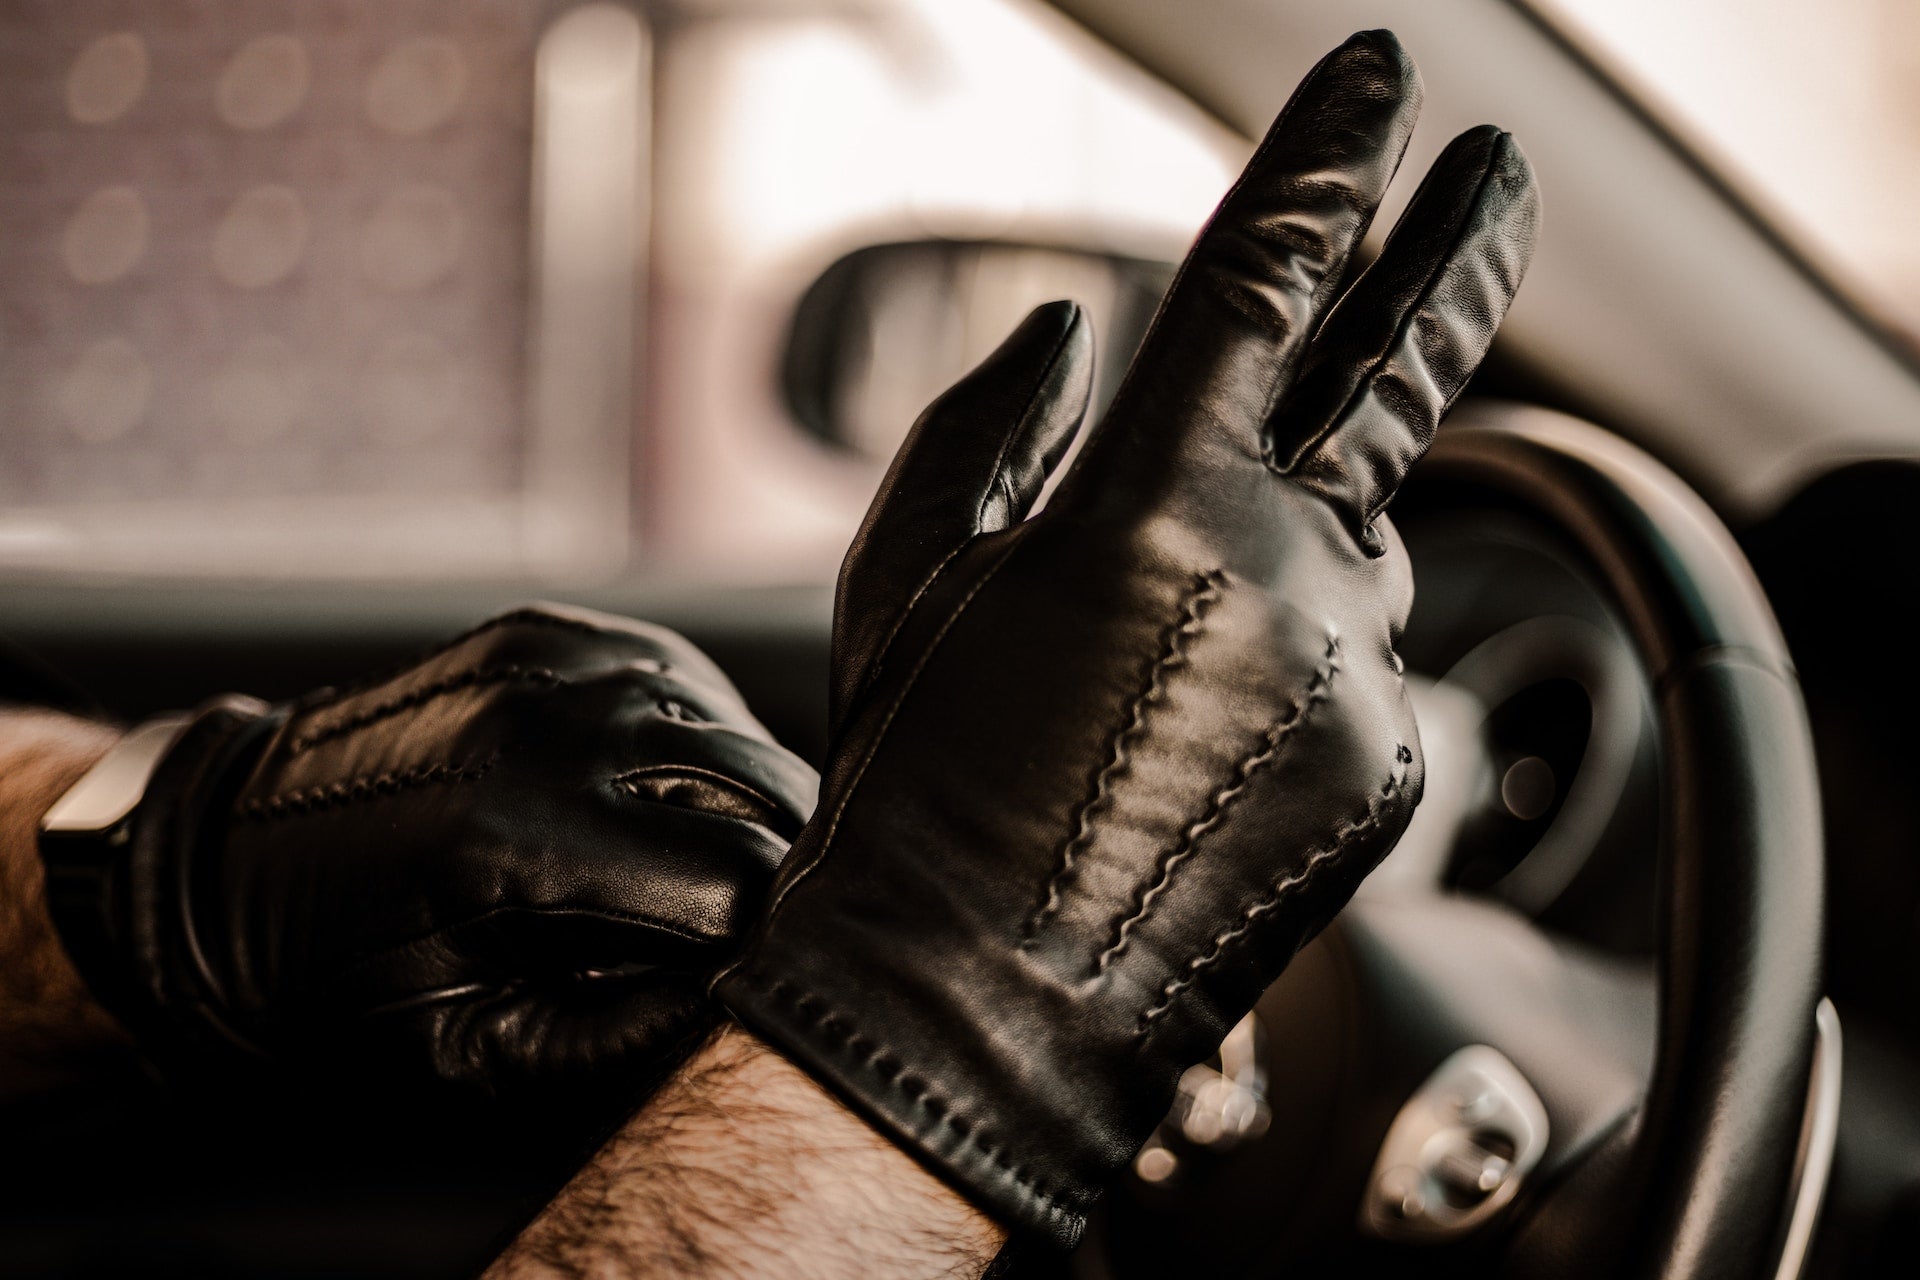 Men Gloves